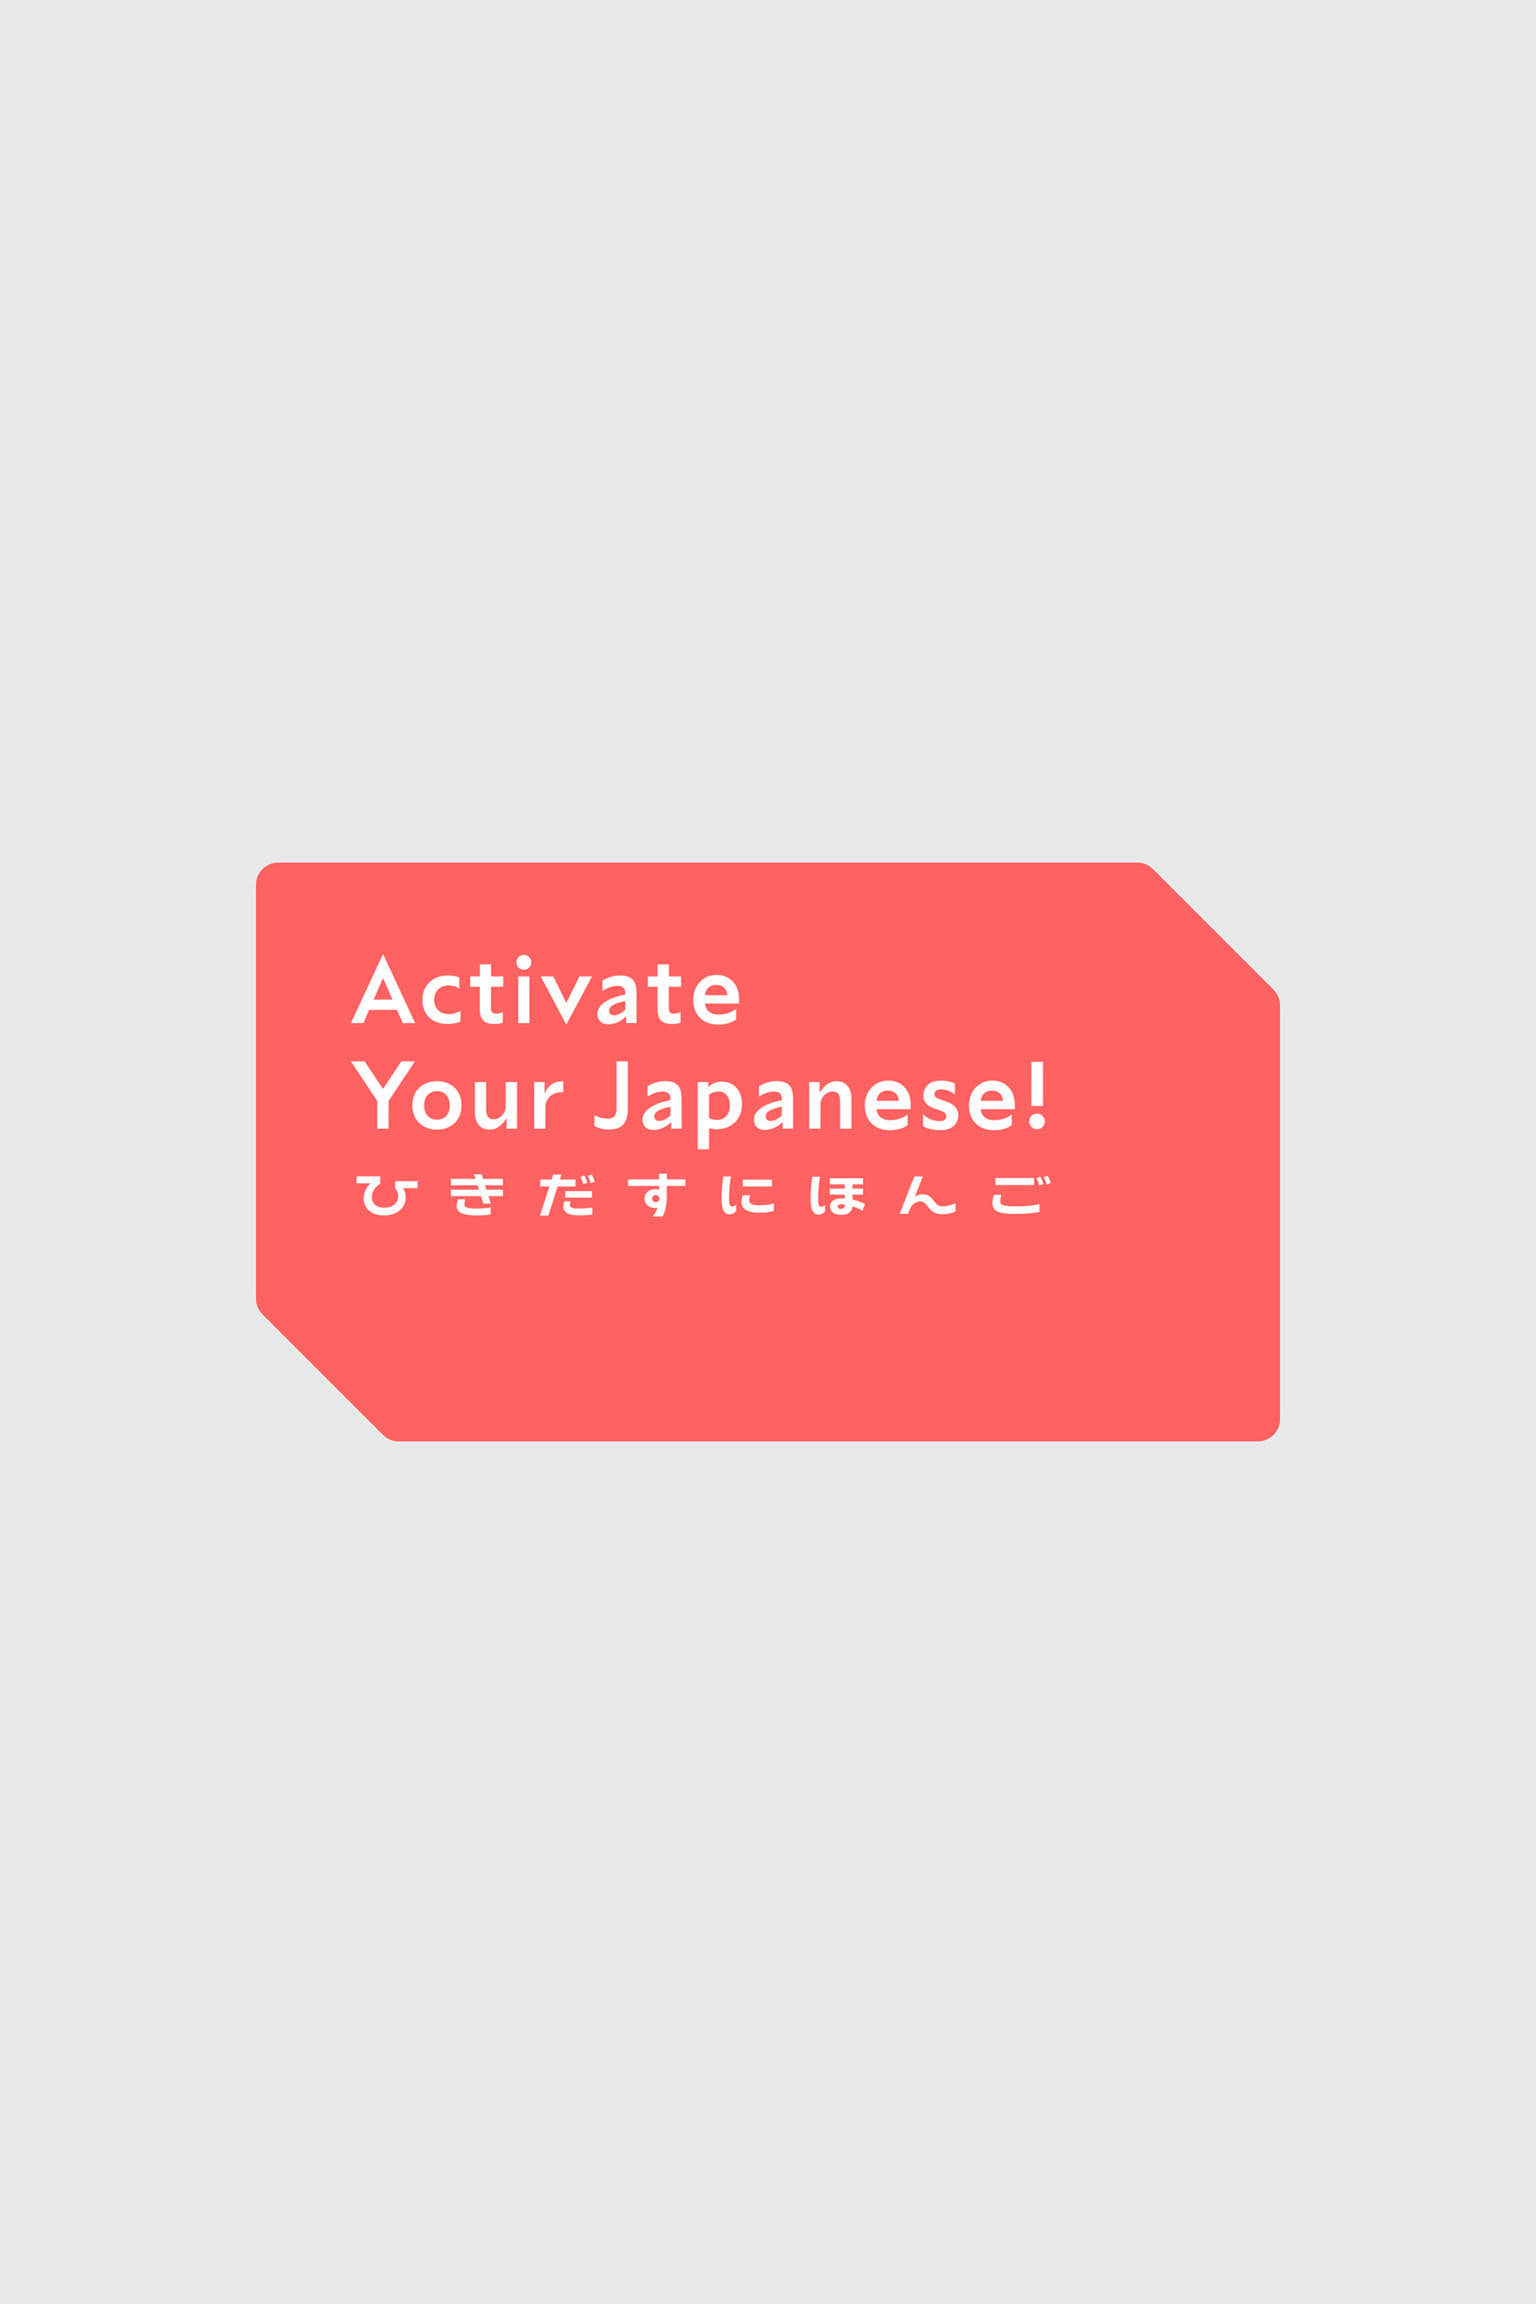 ひきだすにほんご Activate Your Japanese! TV Shows About Japan